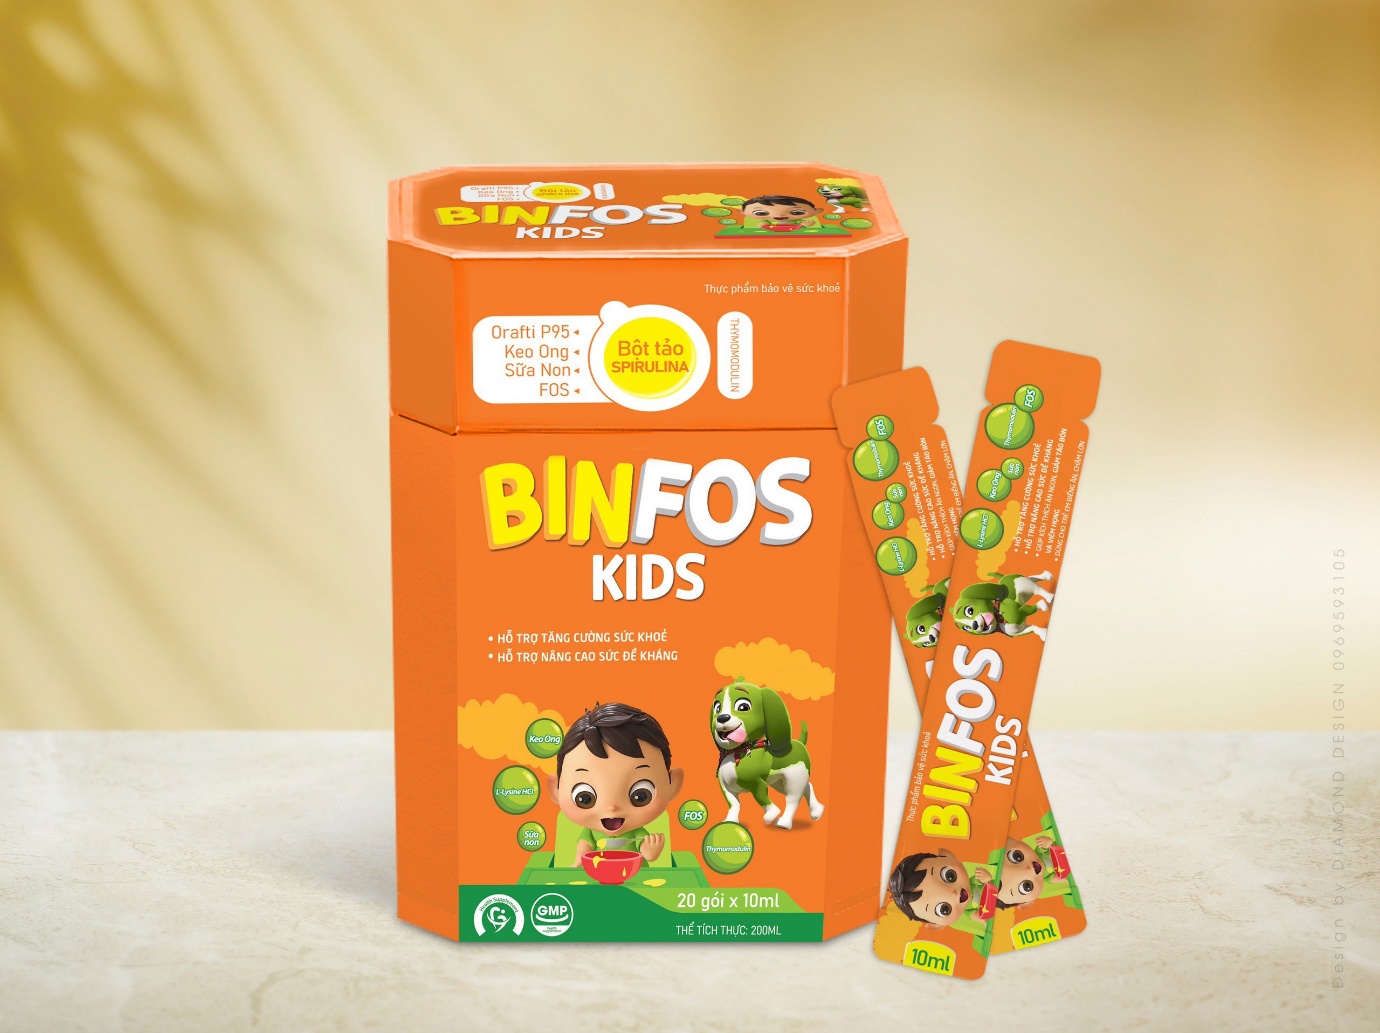 Binfos Kids – Tăng cường sức khỏe, nâng cao đề kháng cho bé - Ảnh 1.